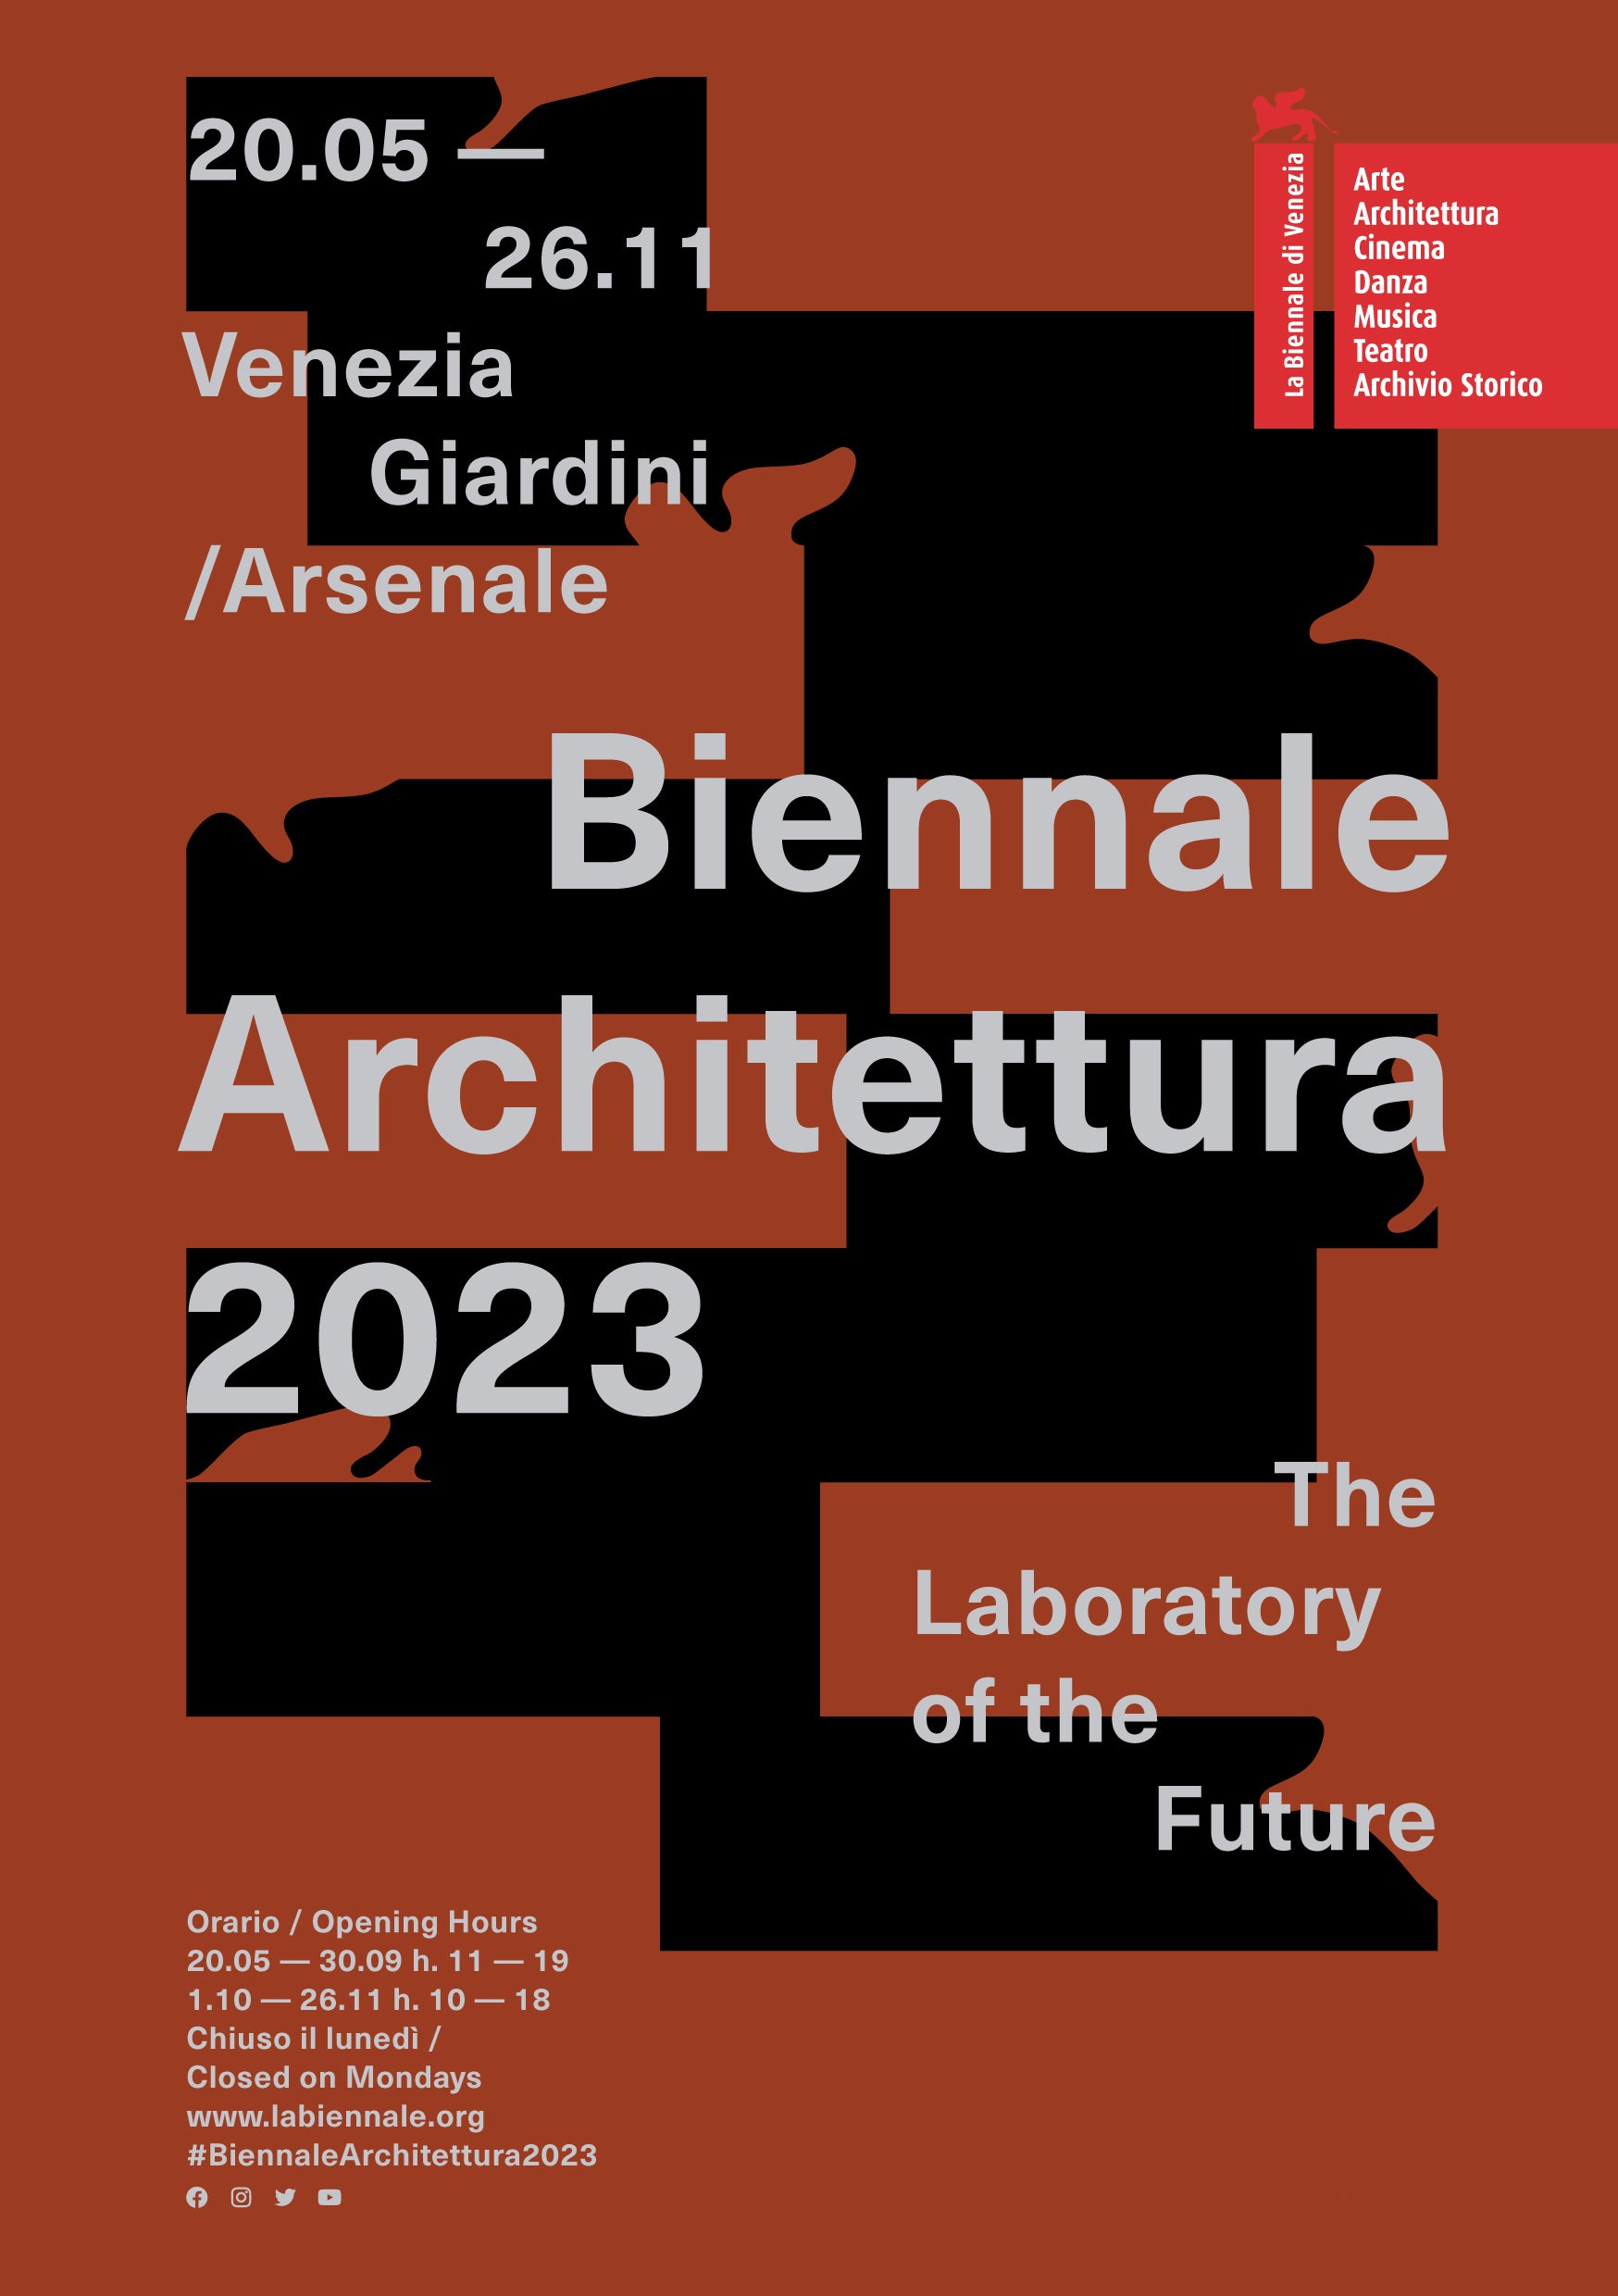 Harold's sponsors German Pavilion at the Biennale 2023